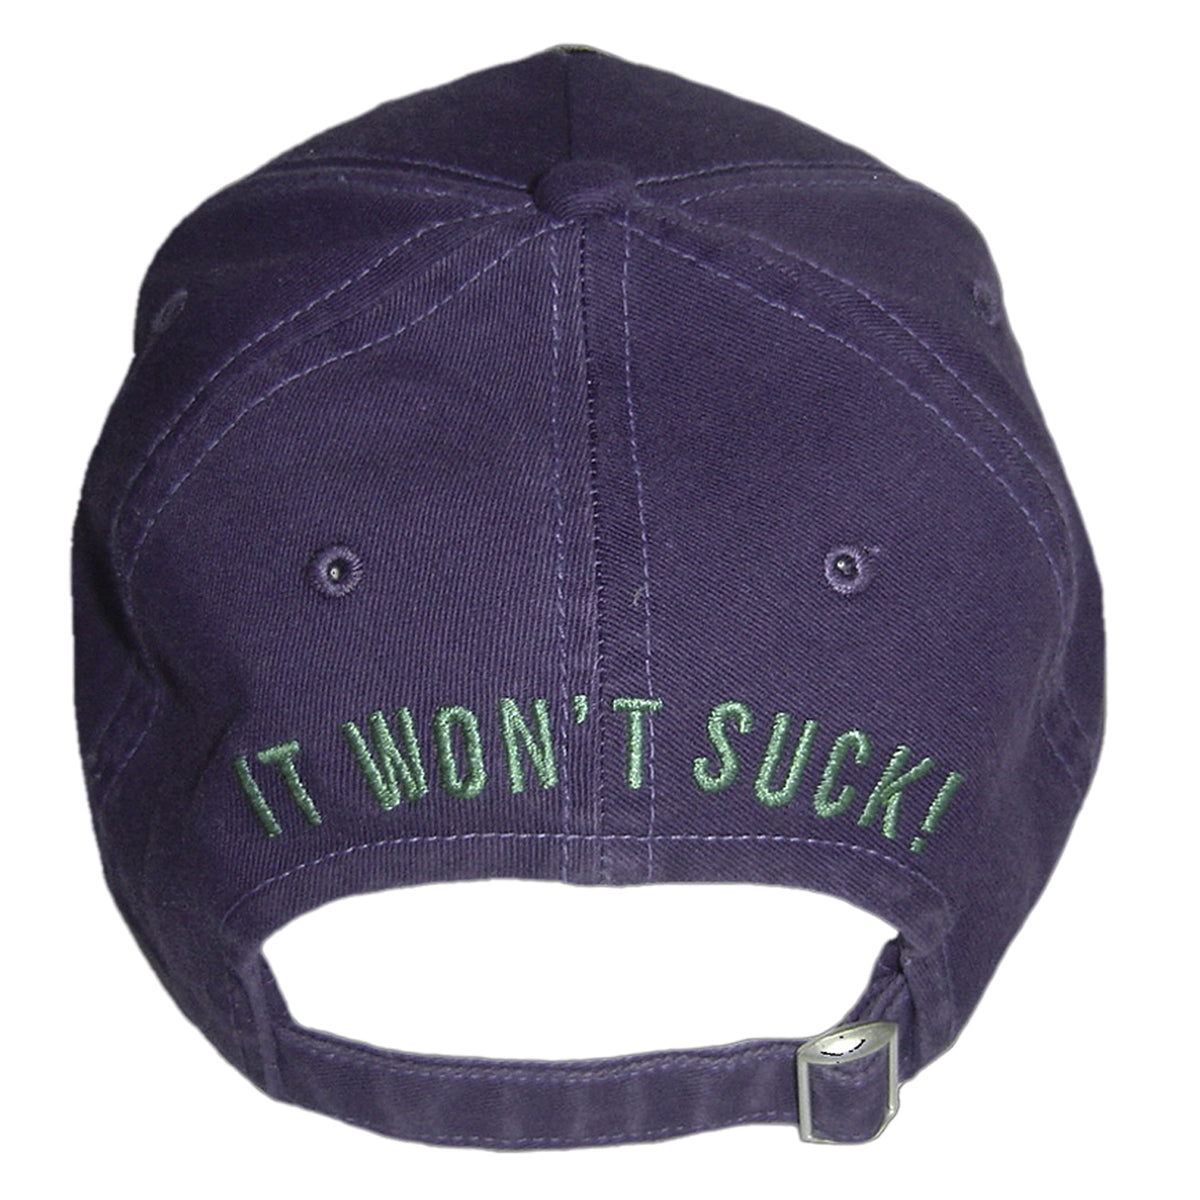 BROKN LEGEND - &quot;WINTER CAMP&quot; Hat in Dark Purple